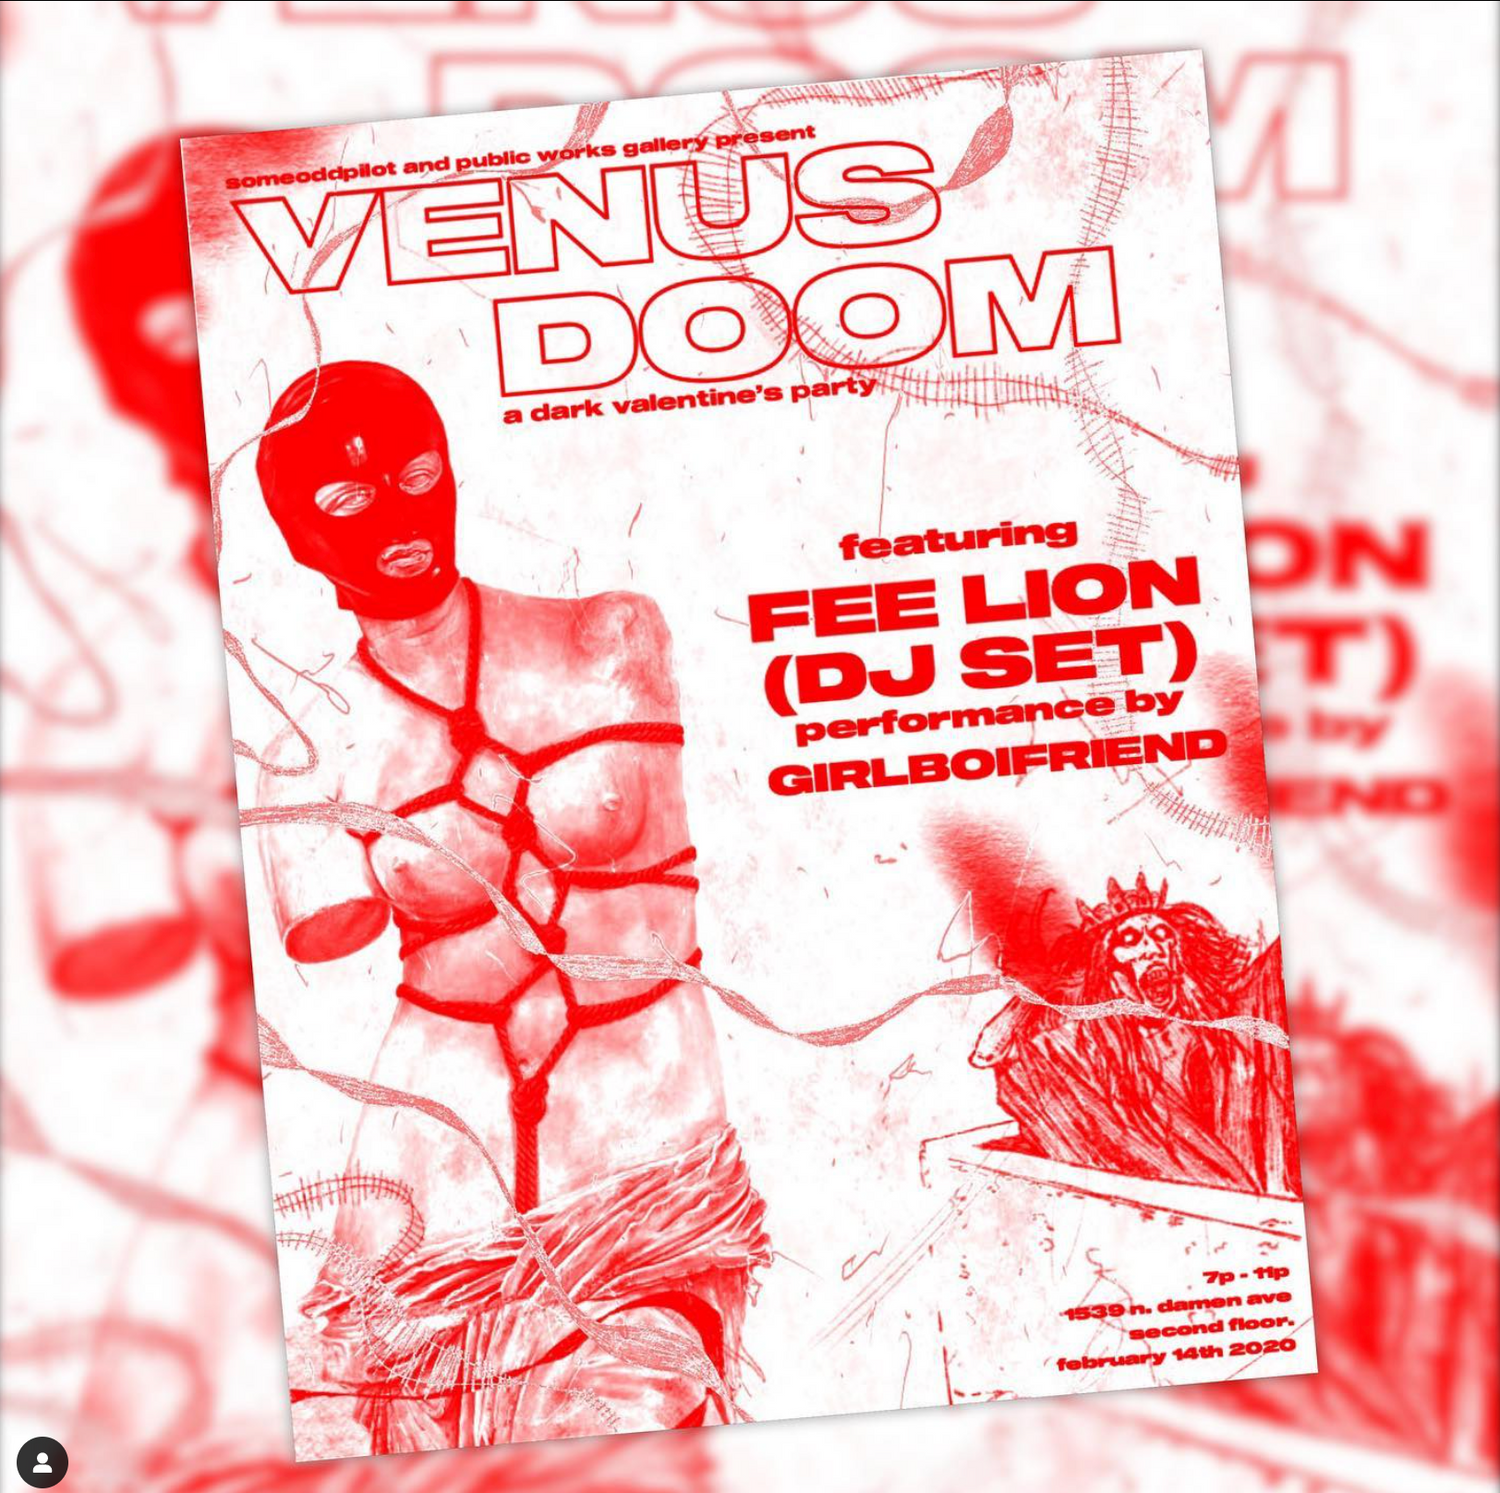 Venus Doom: A Dark Valentine’s Day Party